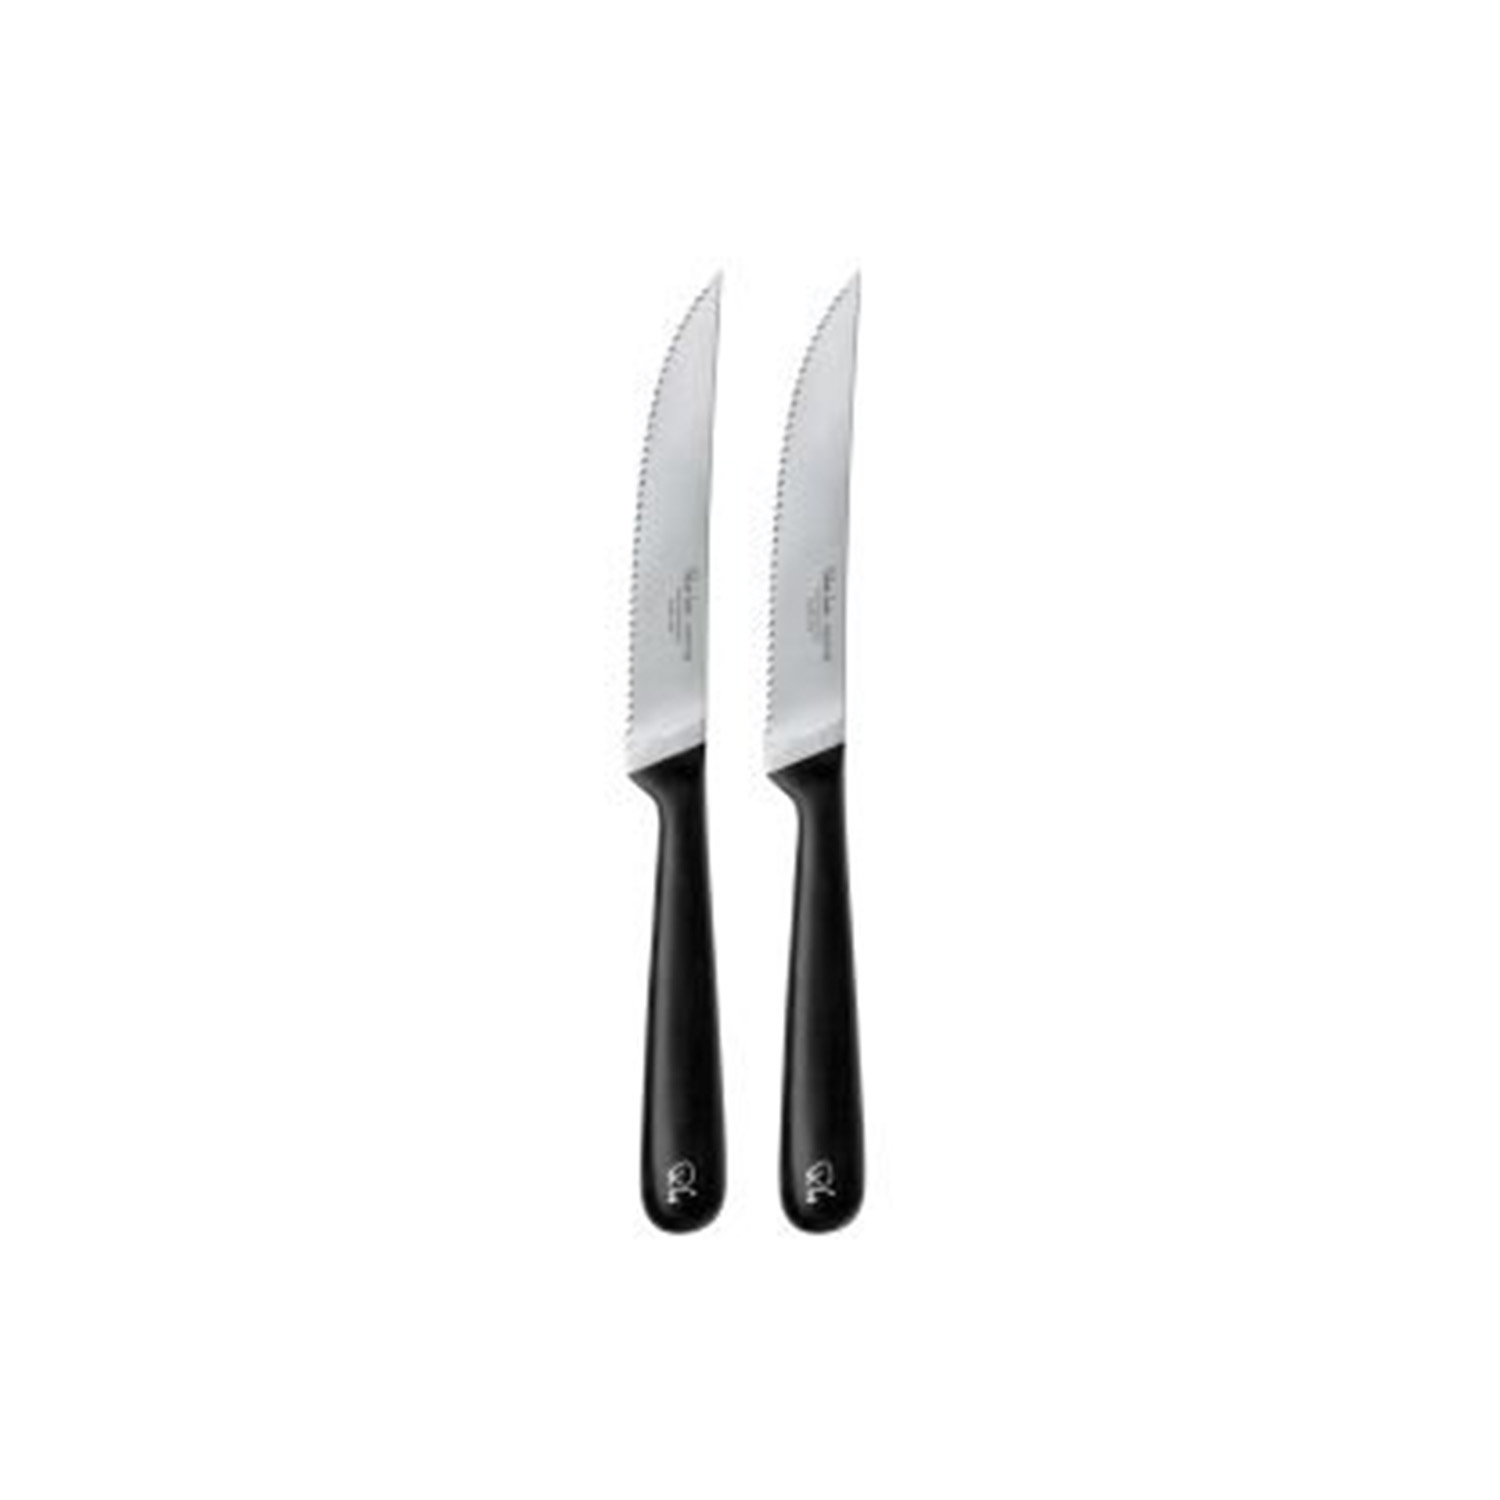 Robert Welch Signature Serrated Steak Knife, Set of 2